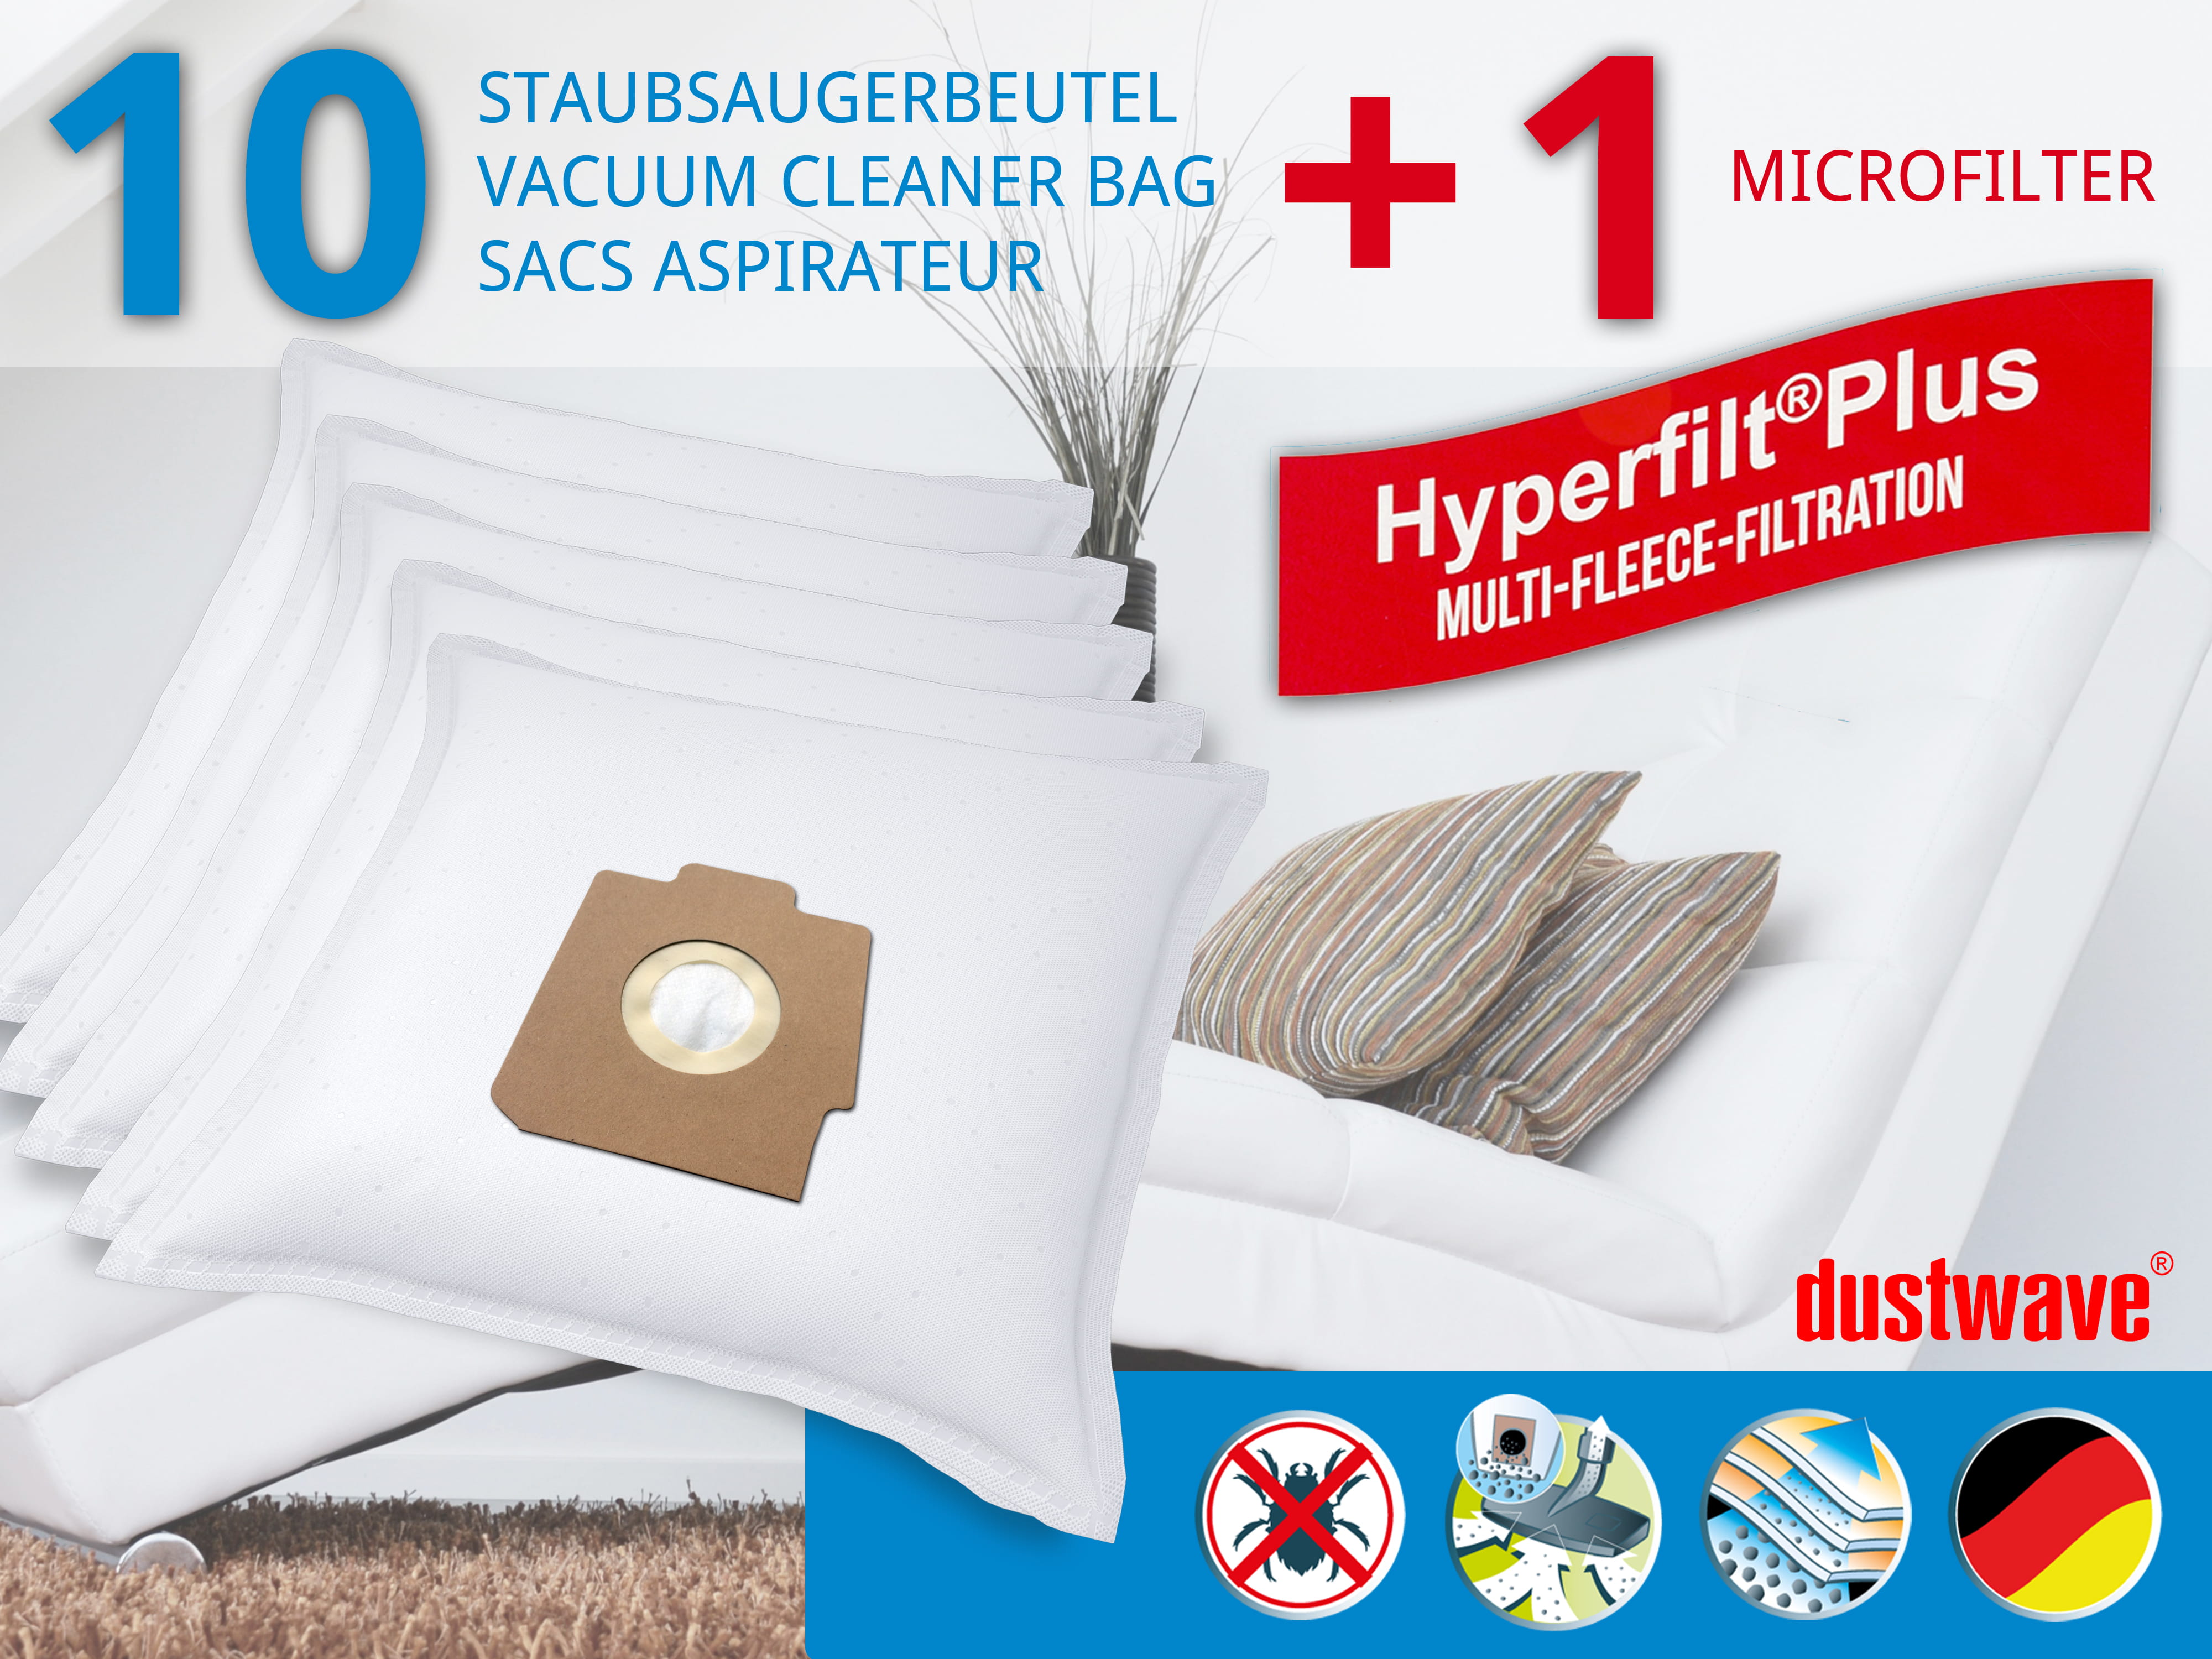 Dustwave® 10 Staubsaugerbeutel für Hoover SC068 Sensotronic - hocheffizient, mehrlagiges Mikrovlies mit Hygieneverschluss - Made in Germany